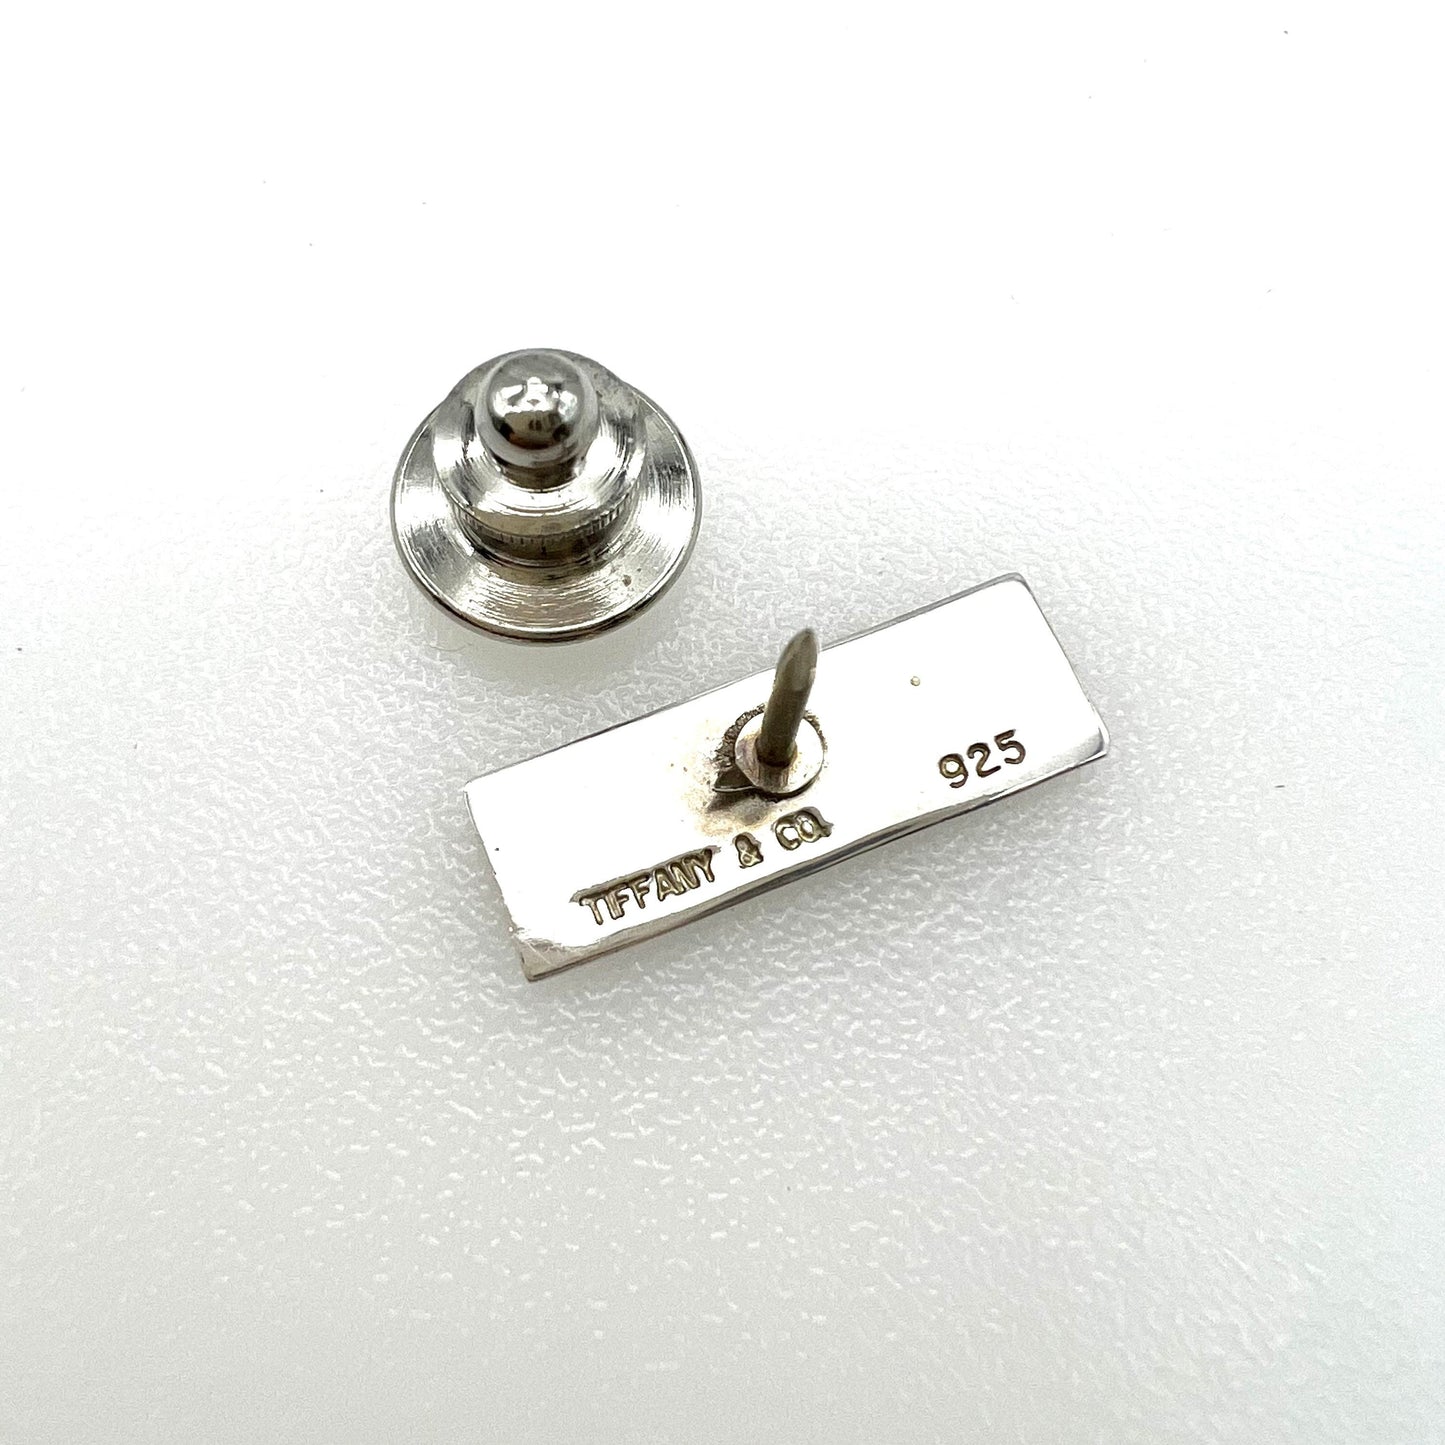 Tiffany & Co. 925 Silver Pin for HYATT